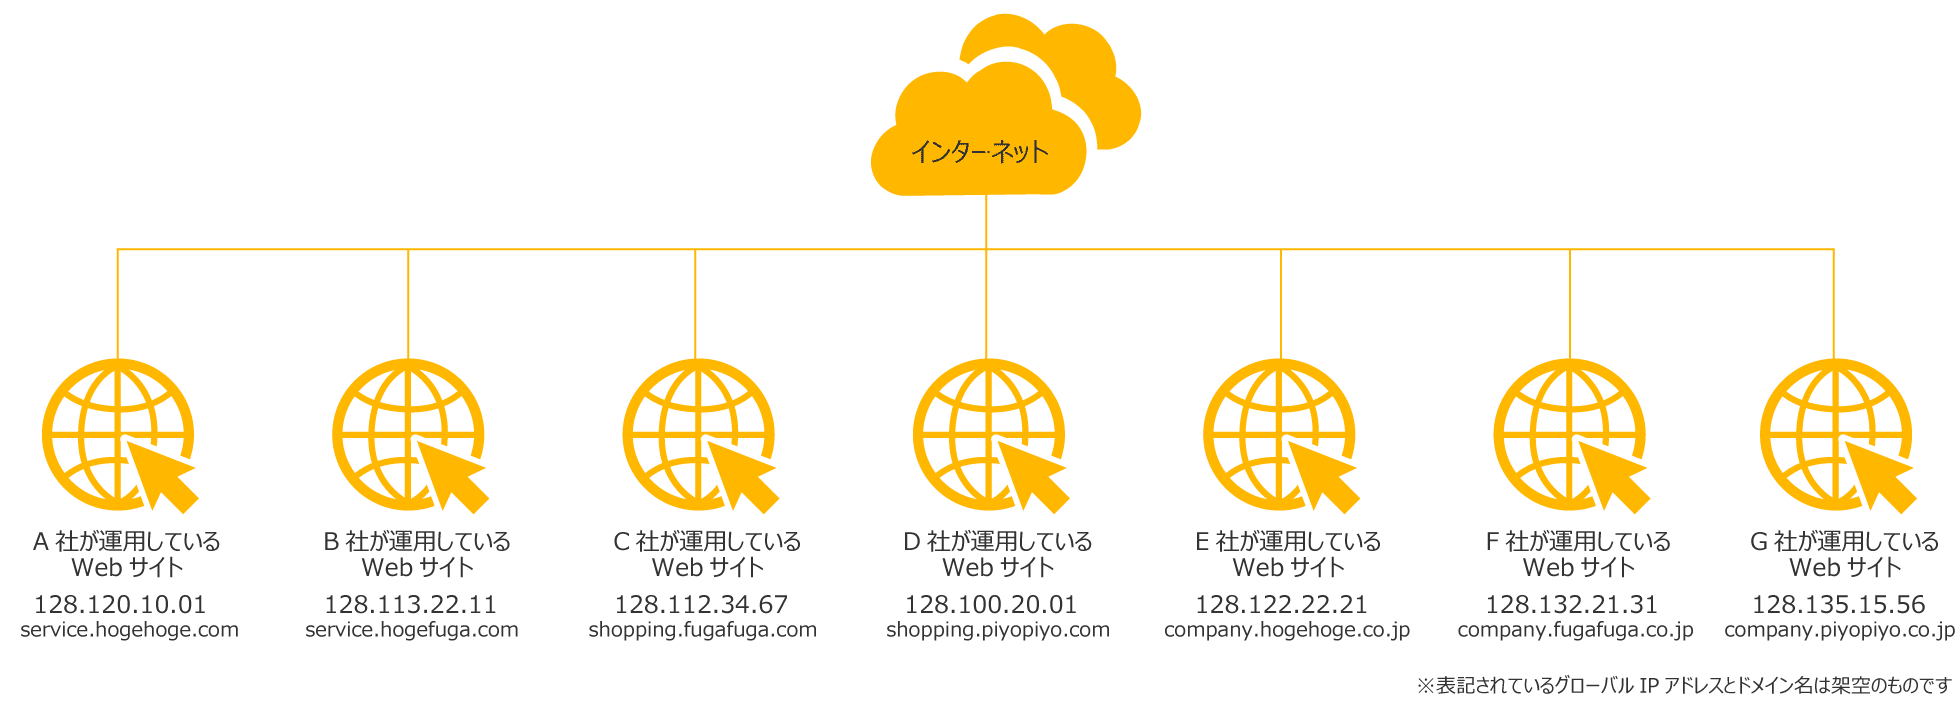 グローバルIPアドレスがWebサイトで利用されている例